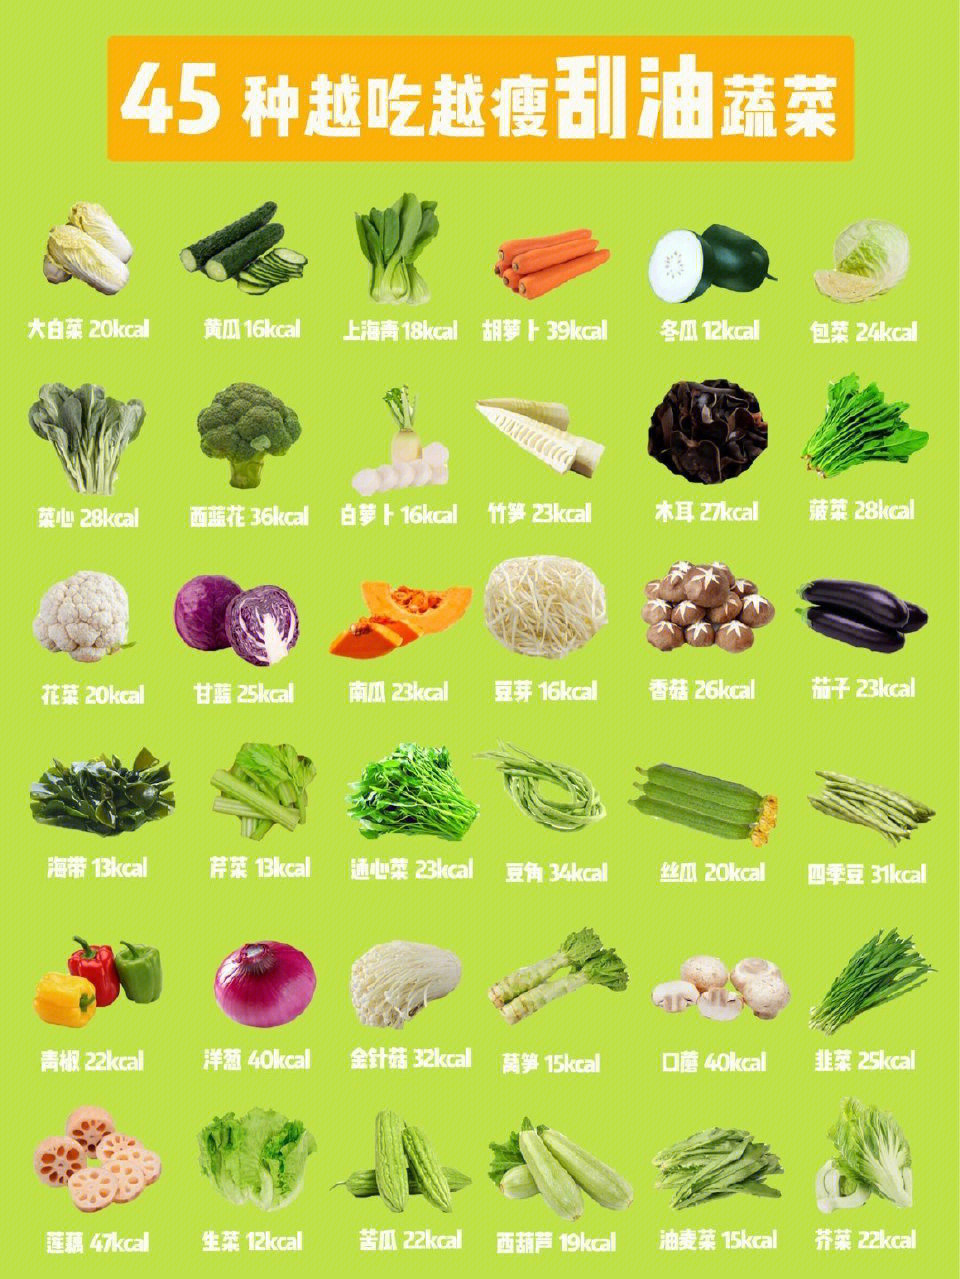 各种蔬菜图片及名称图片